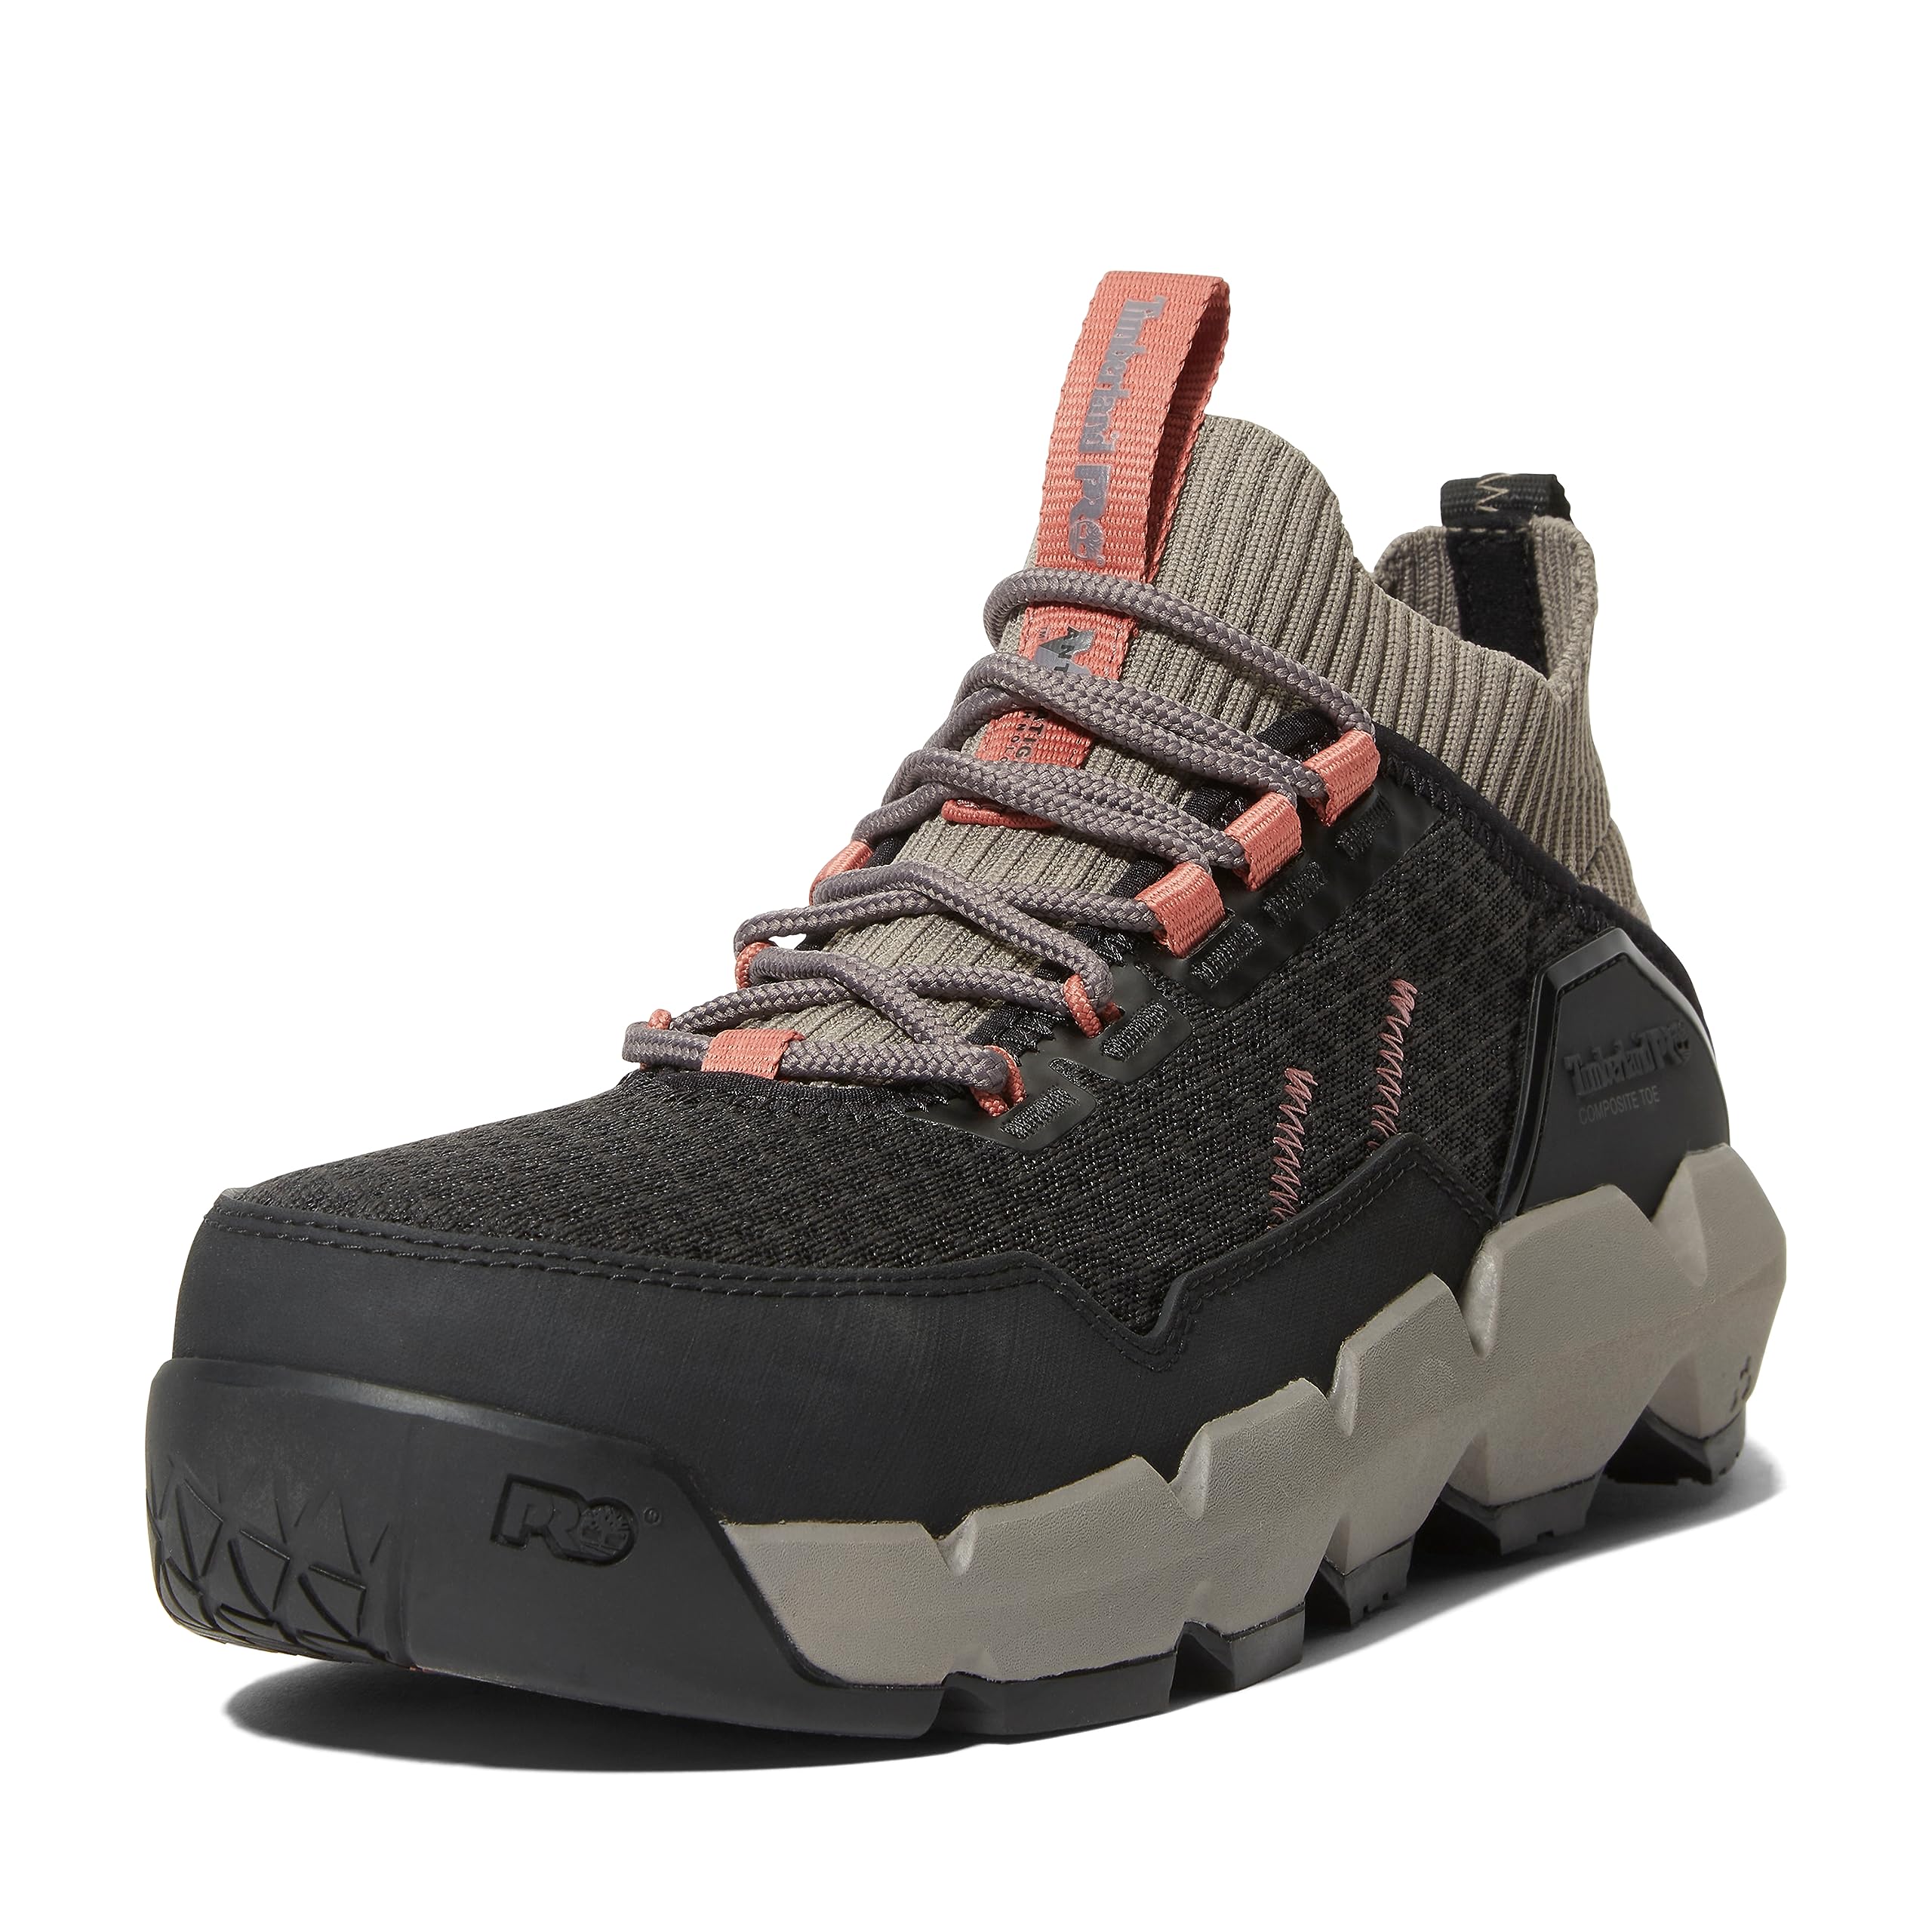 Timberland PRO Women's Morphix Industrial Casual Sneaker Boot